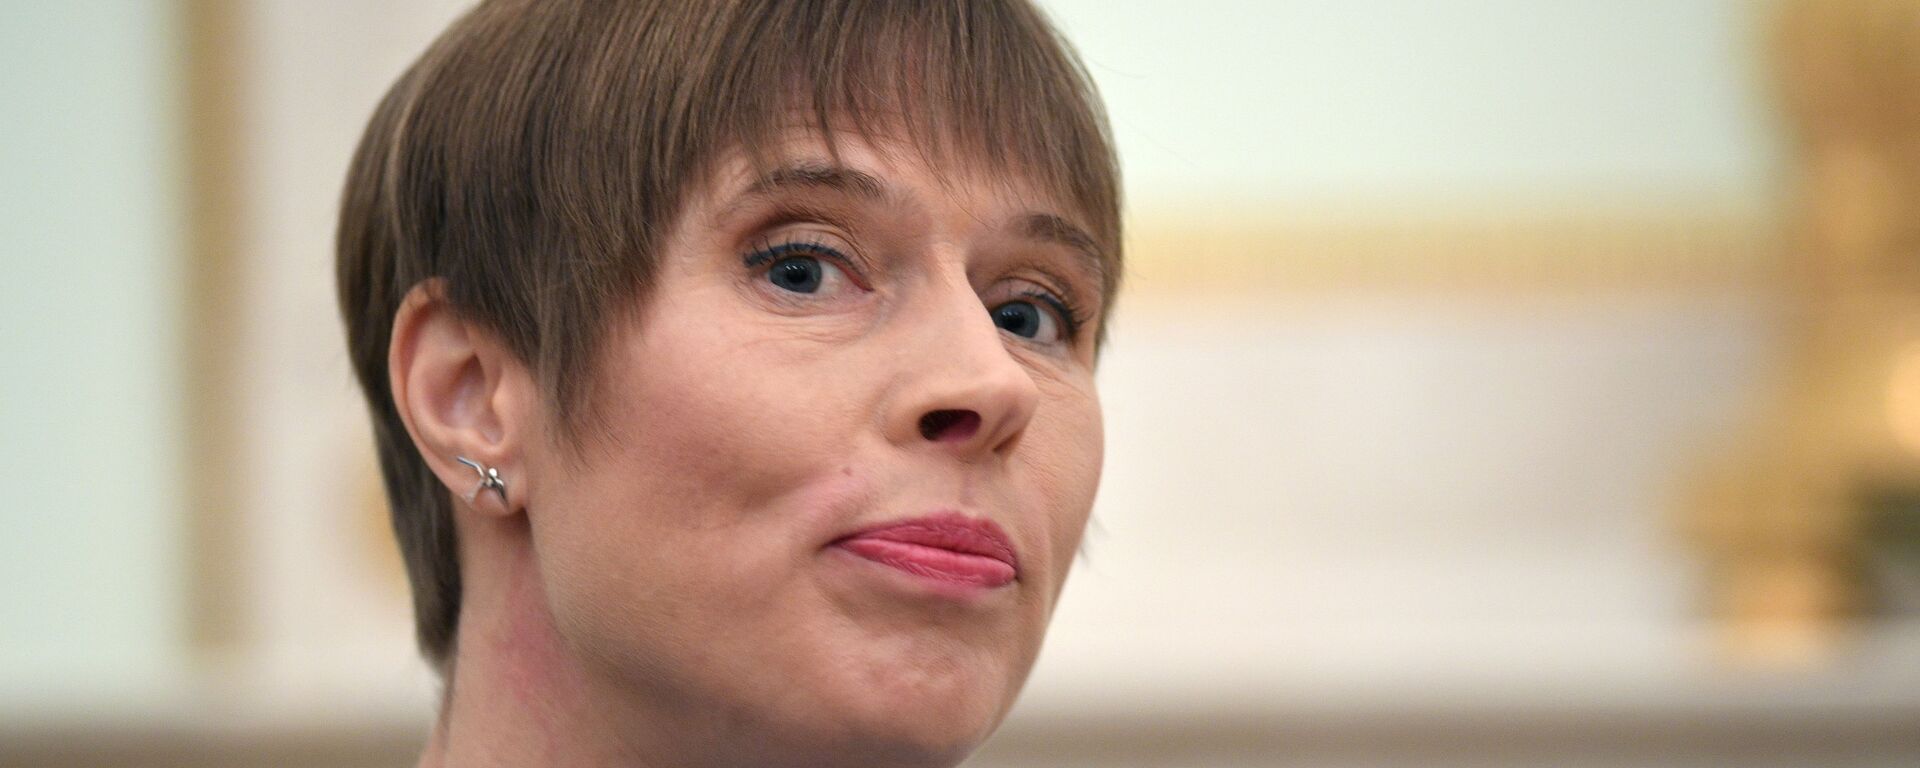 Kersti Kaljulaid, presidenta de Estonia - Sputnik Mundo, 1920, 05.03.2021